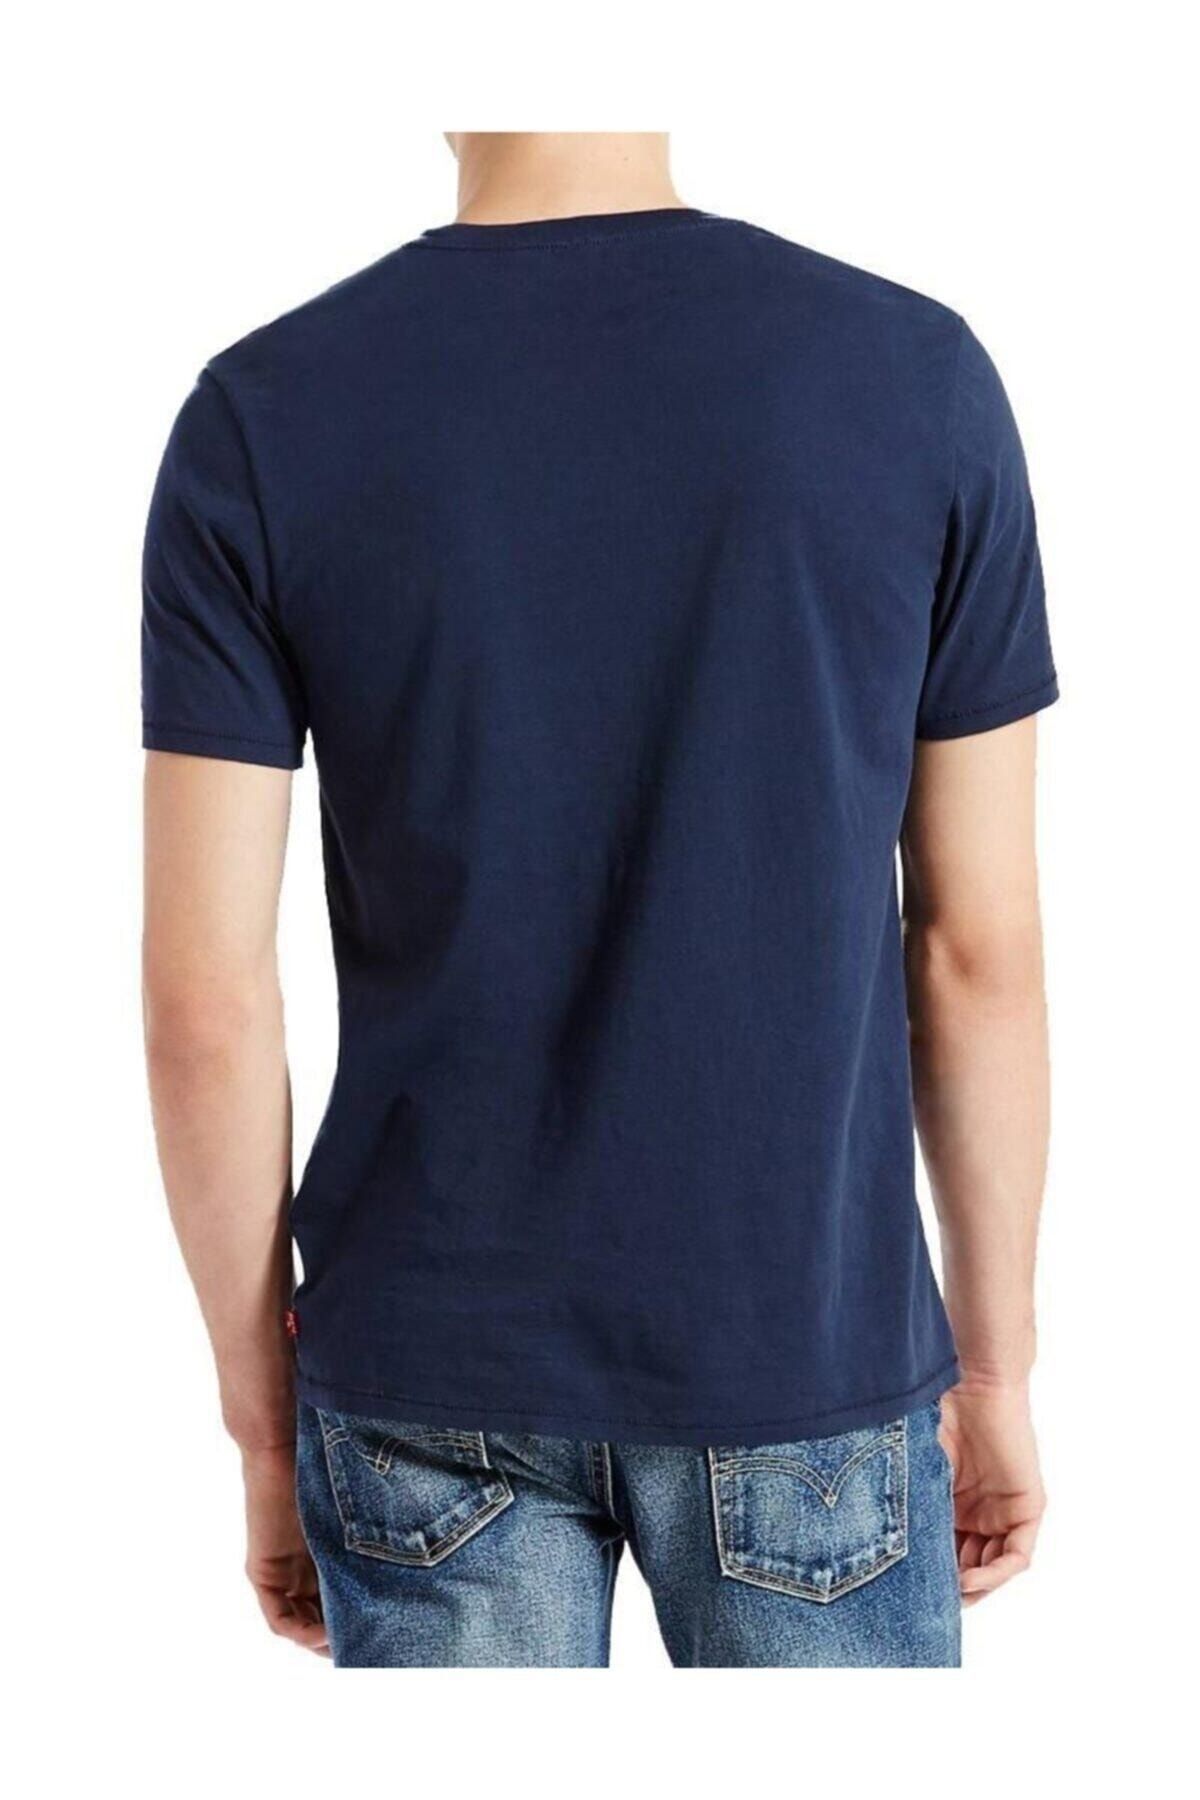 Levi's تی شرت آبی سرمه ای با لوگو مردانه 17783-0313